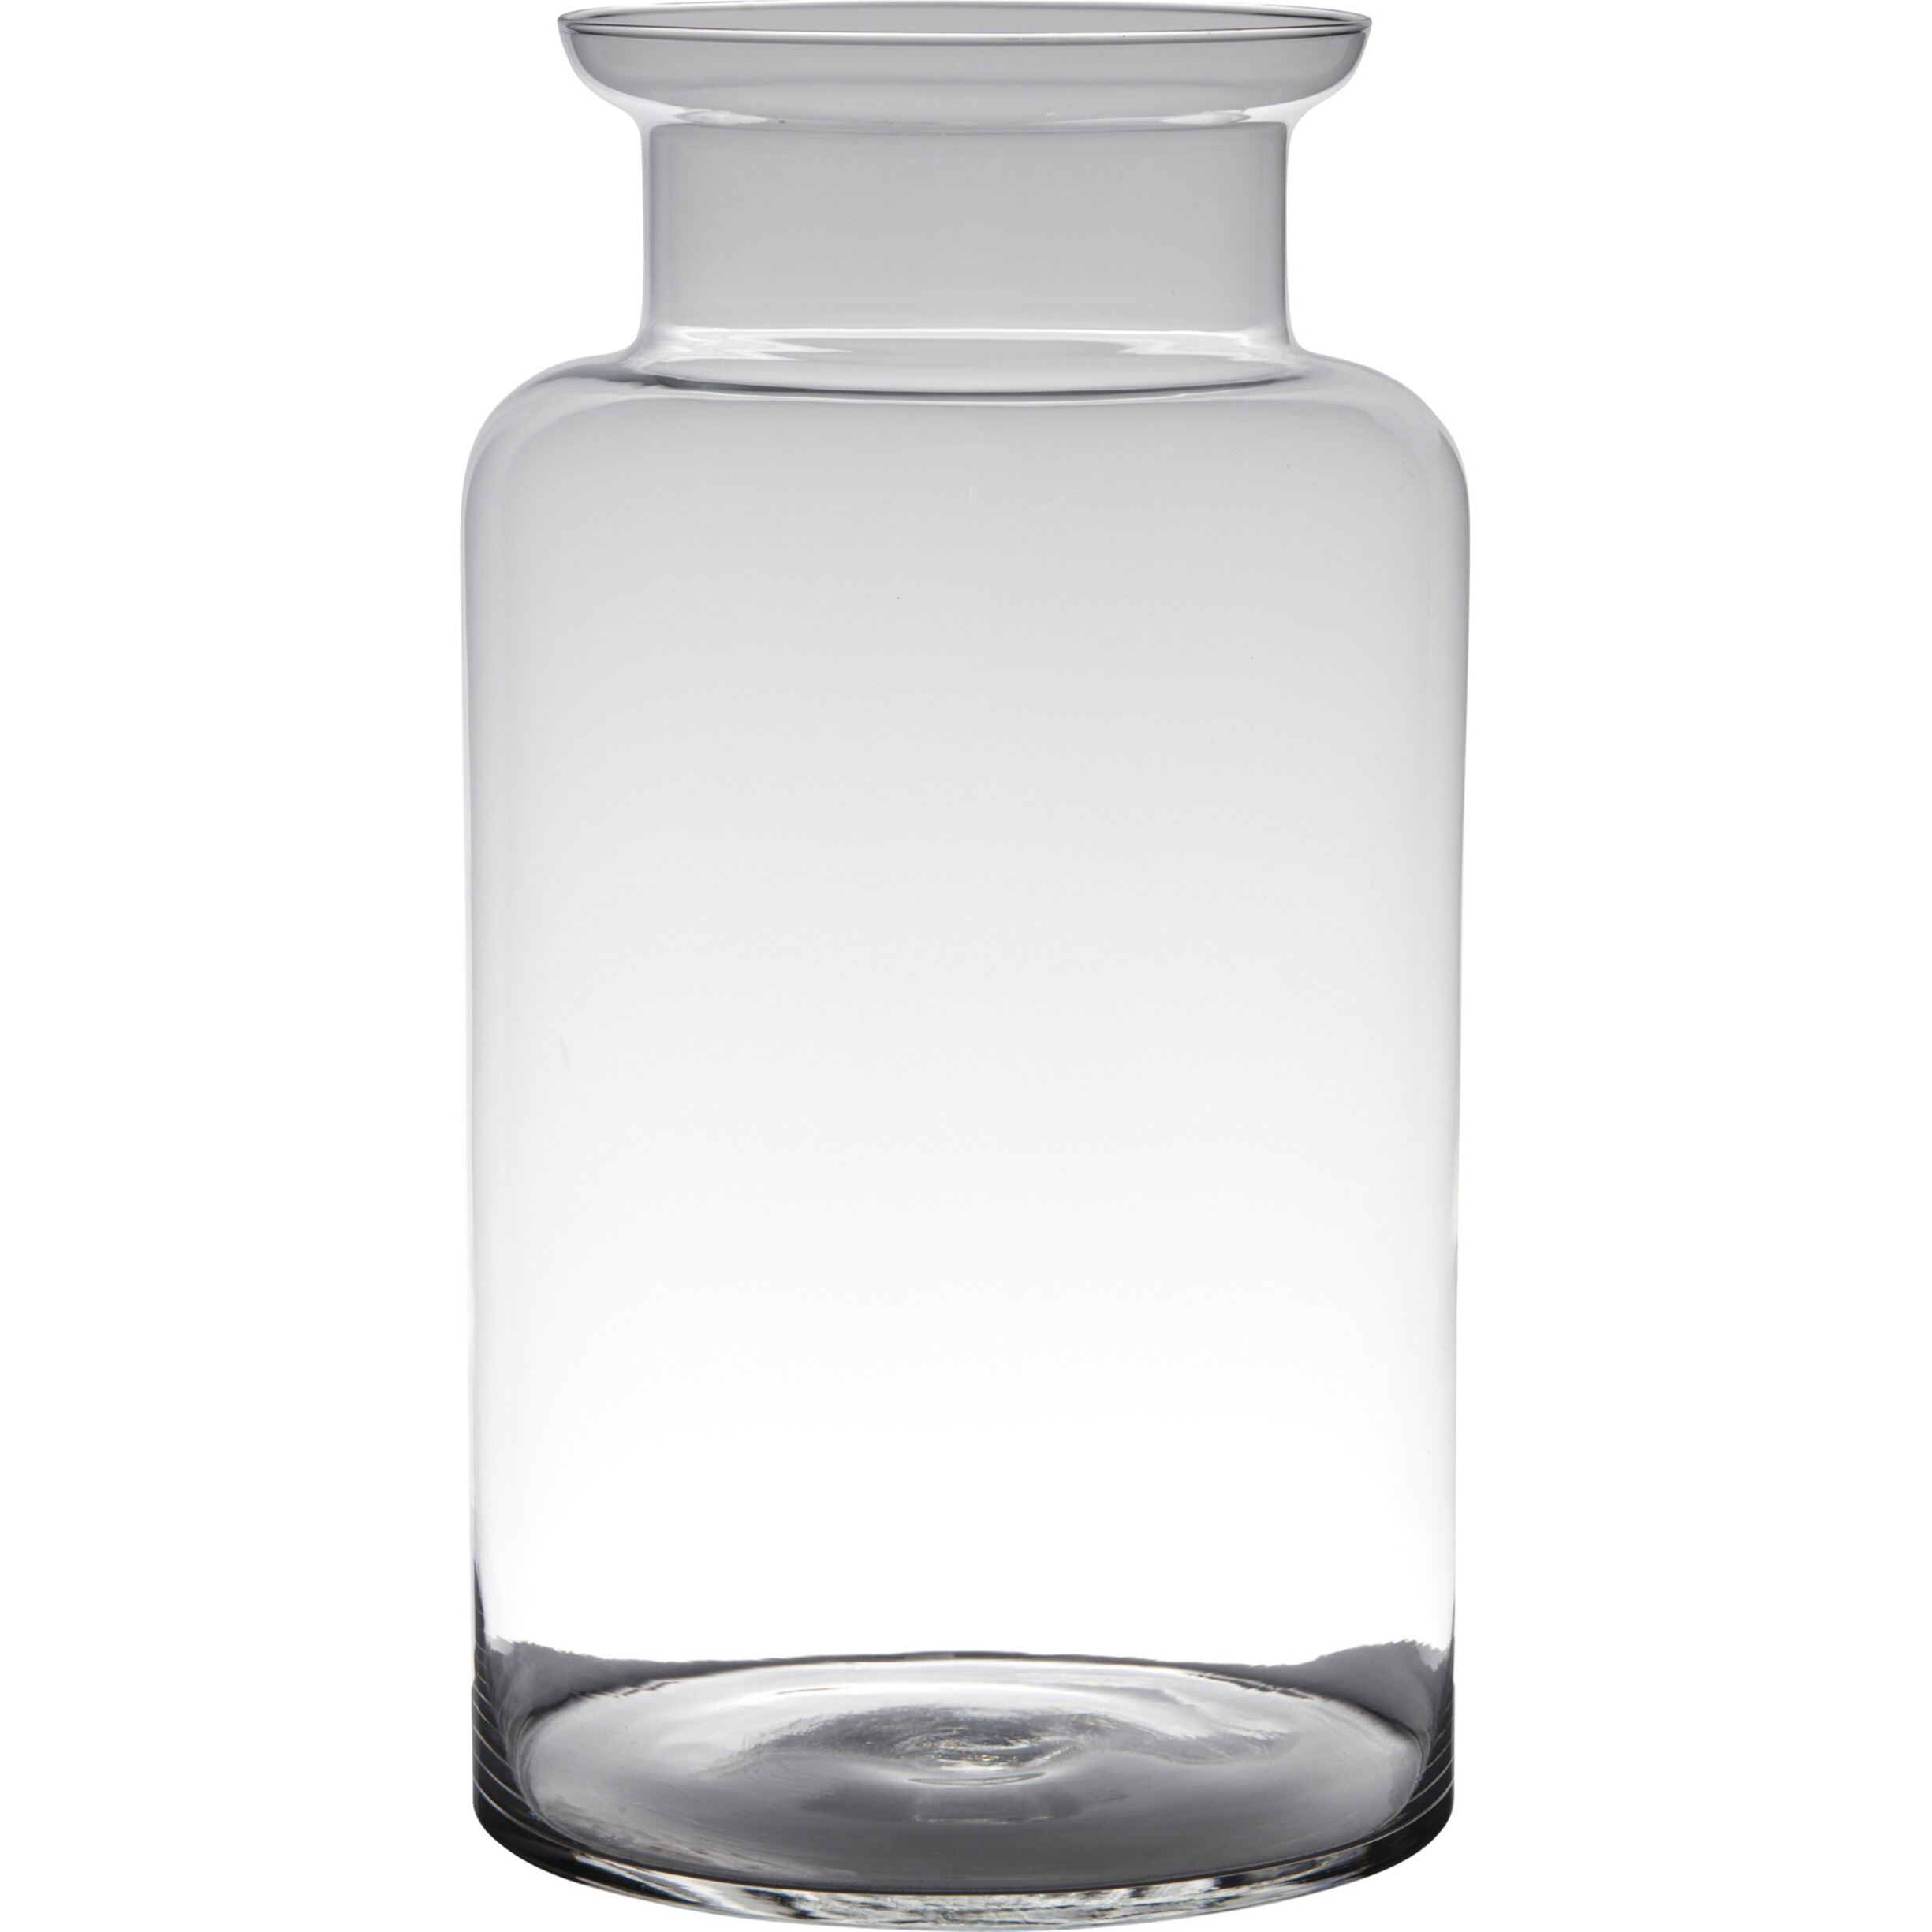 Hakbijl Glass Transparante luxe grote melkbus vaas/vazen van glas 45 x 25 cm -